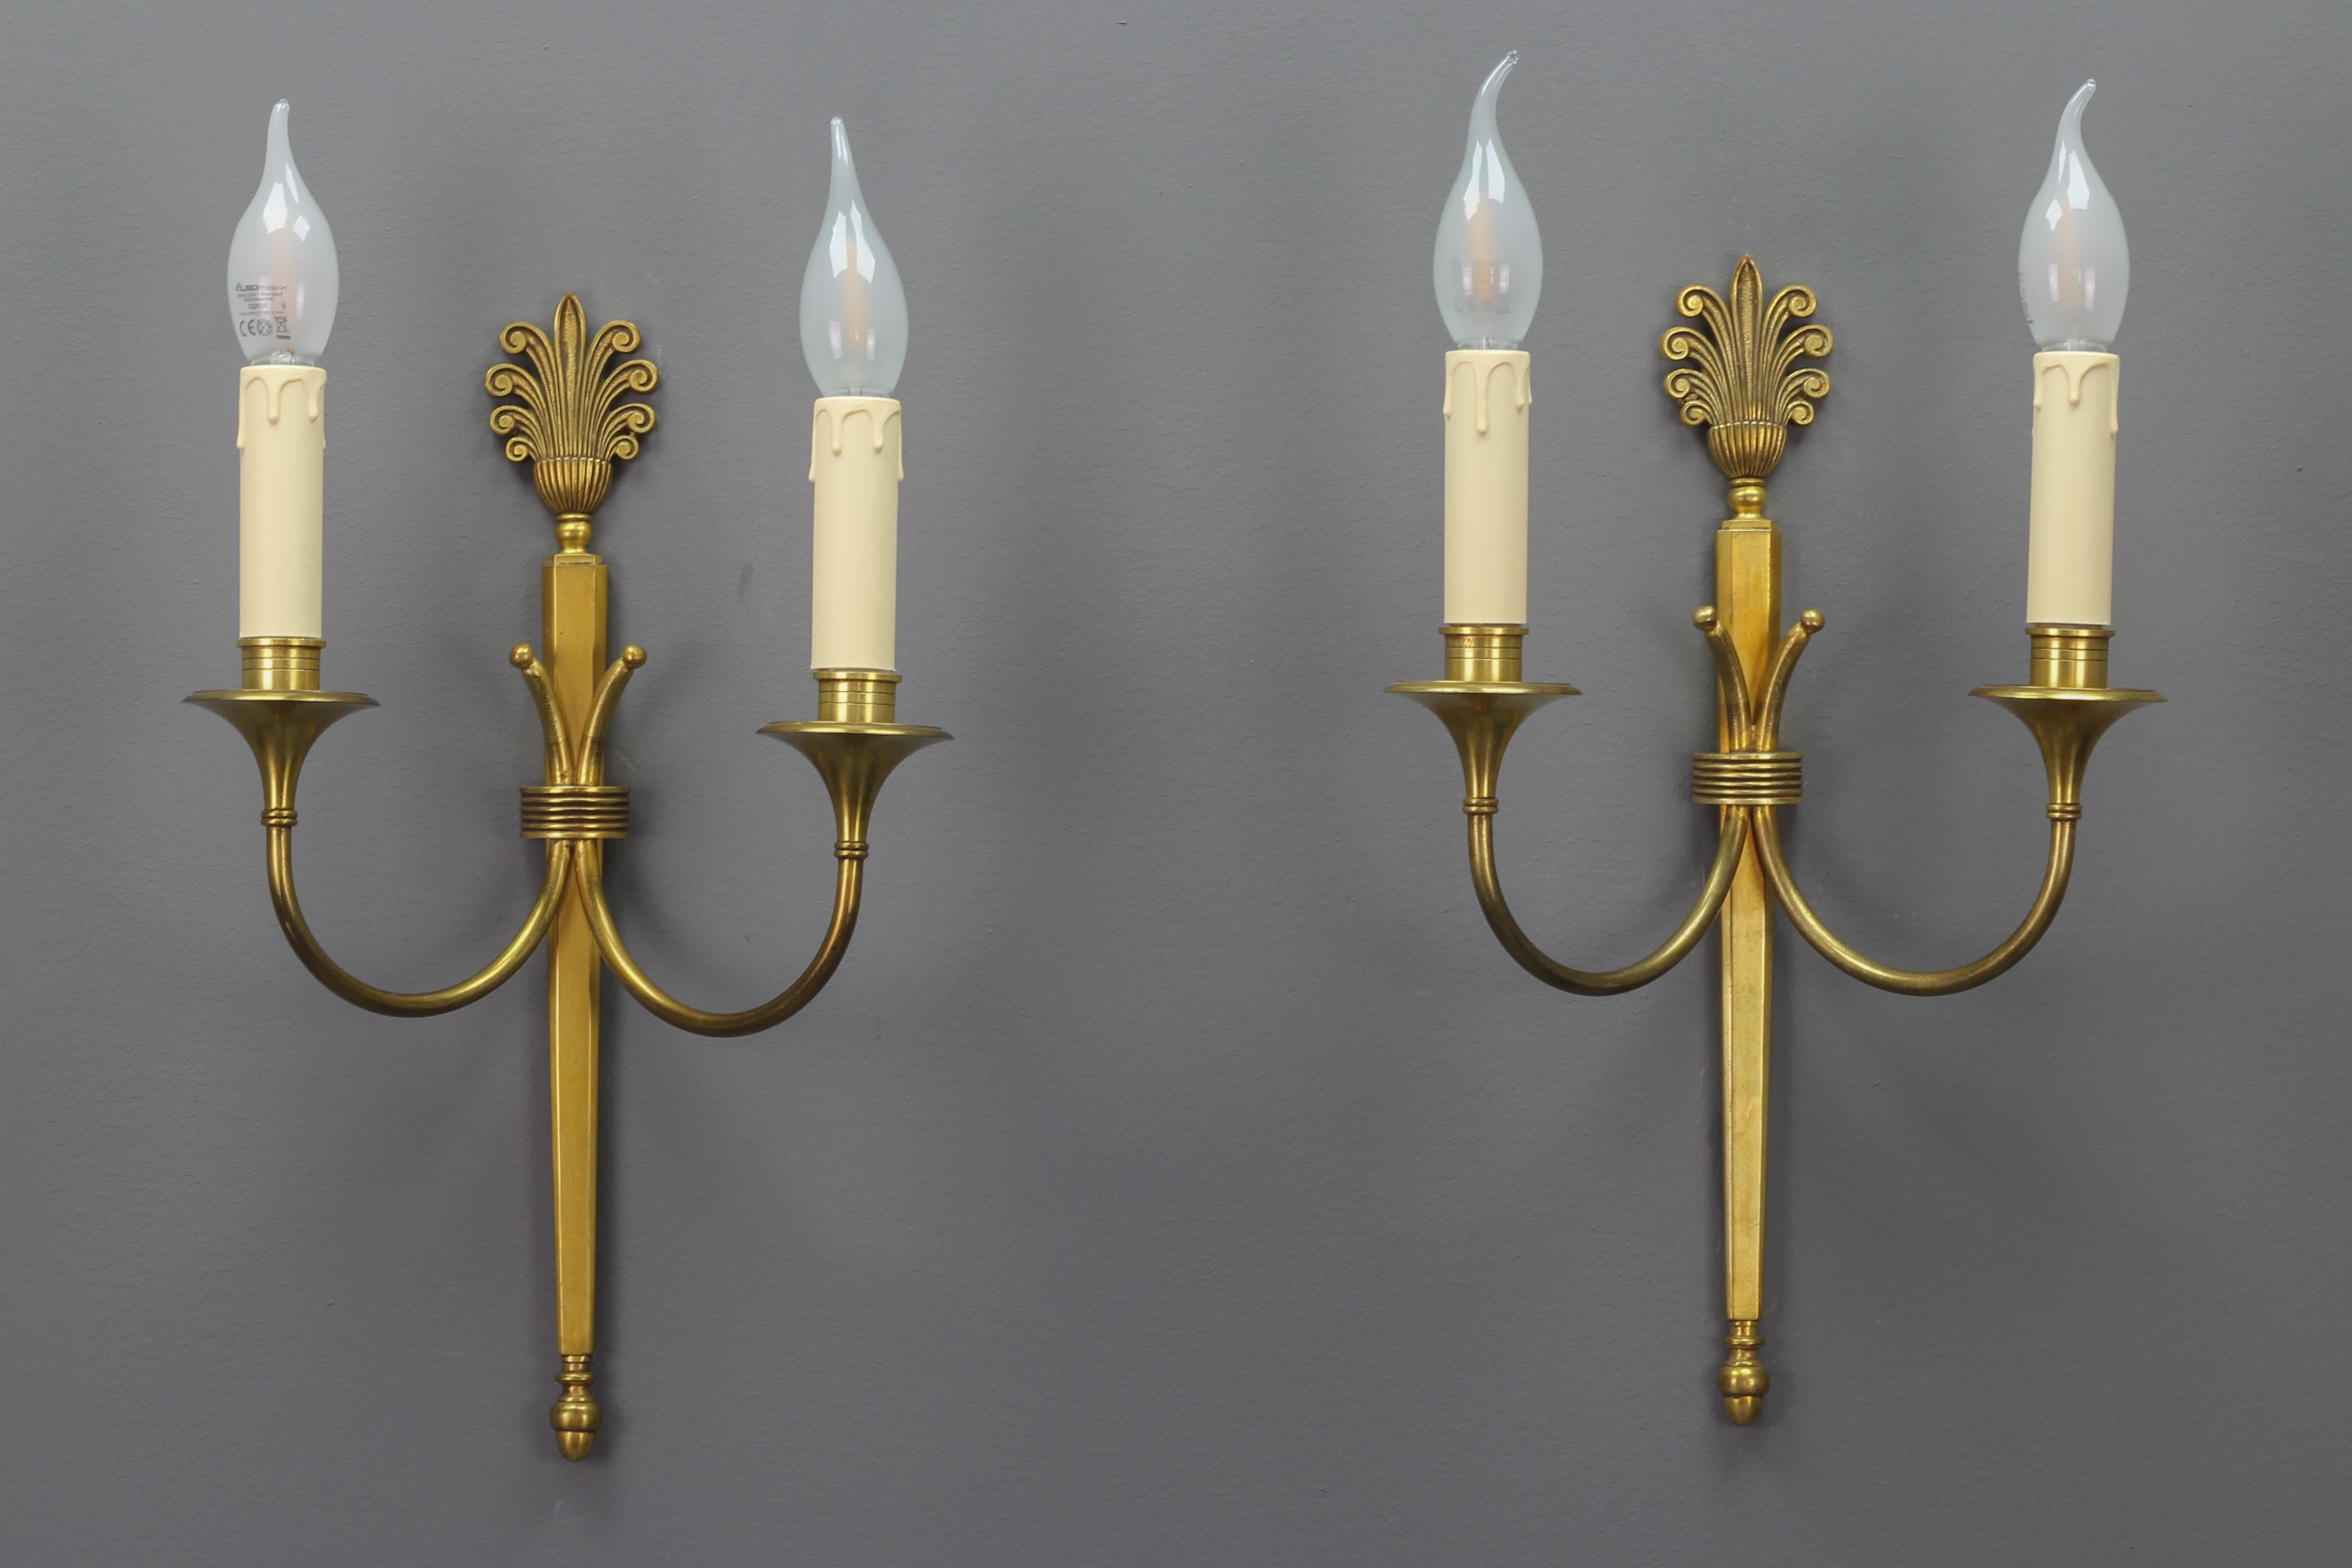 Ein Paar französischer zweiarmiger Art-Déco-Leuchter aus Messing von ca. 1930.
Dieses elegante Paar Messingleuchten hat einen schönen Messingsockel mit typischen Art-Déco-Dekoren. Jede Leuchte hat zwei Arme mit je einer Fassung für eine Glühbirne